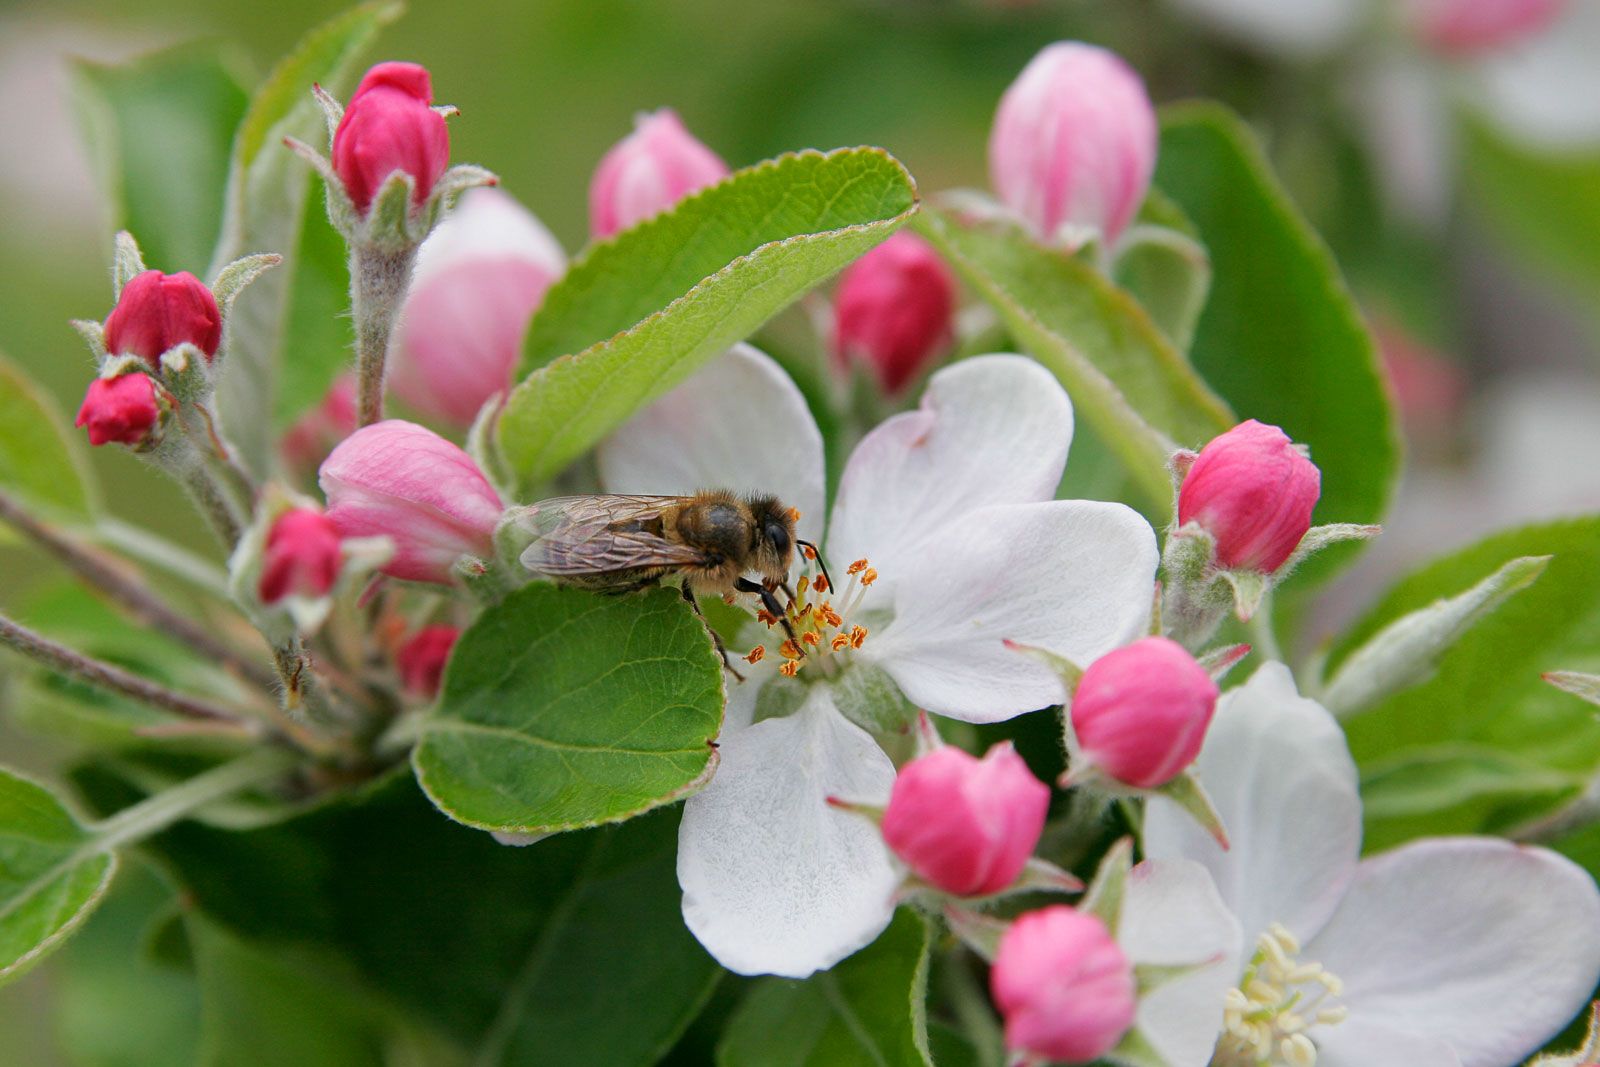 عکس ماکرو جذاب از زنبور در حال جمع گرده شکوفه های سیب 